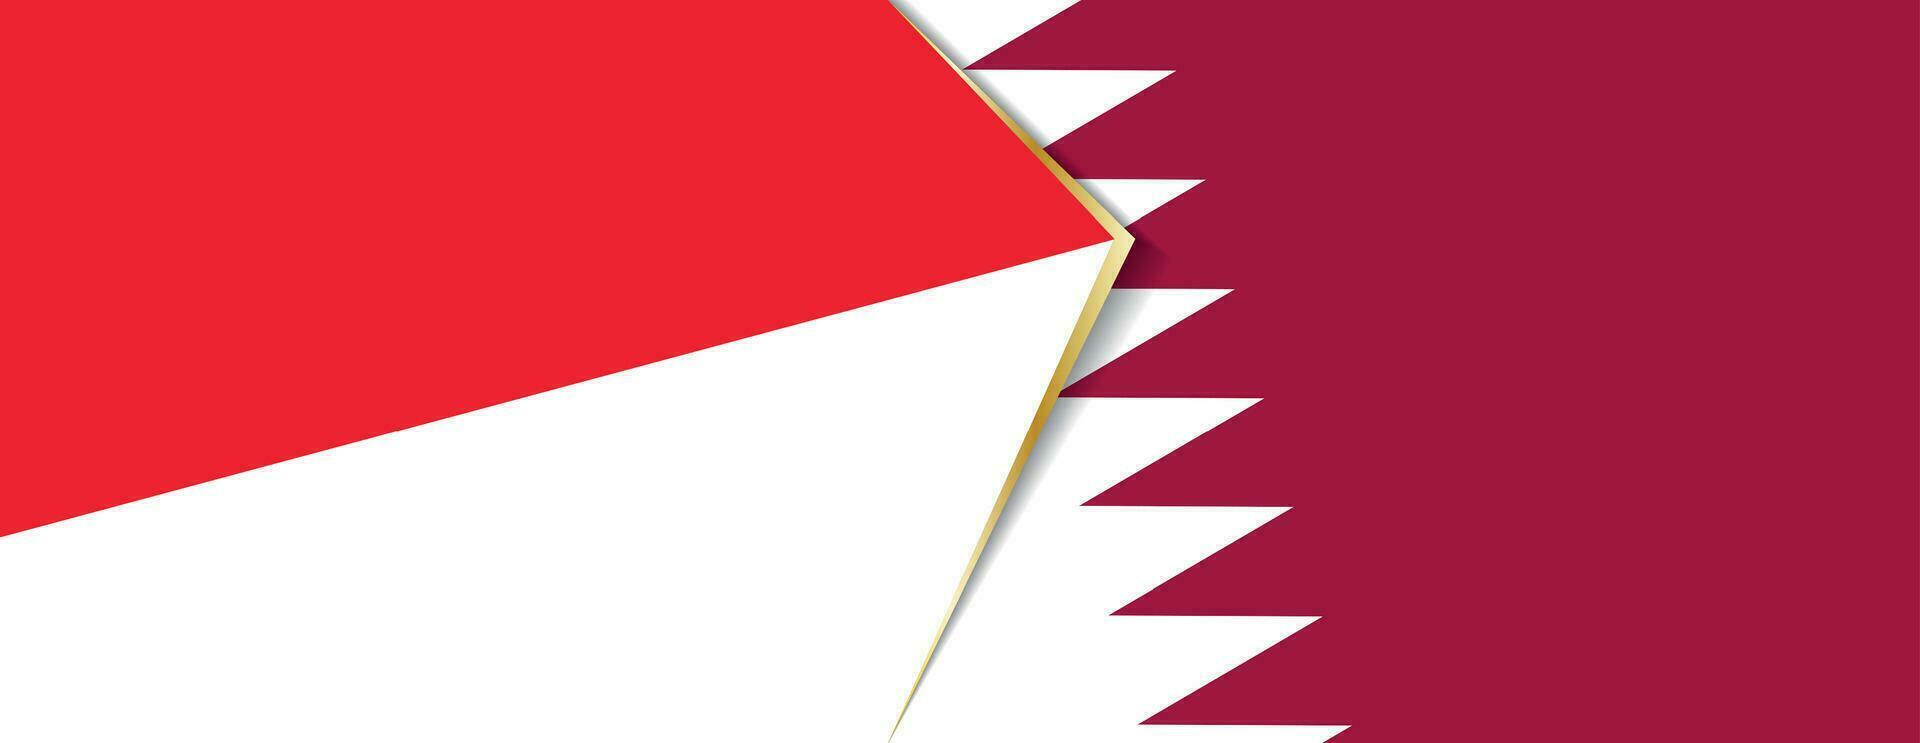 Indonesia y Katar banderas, dos vector banderas